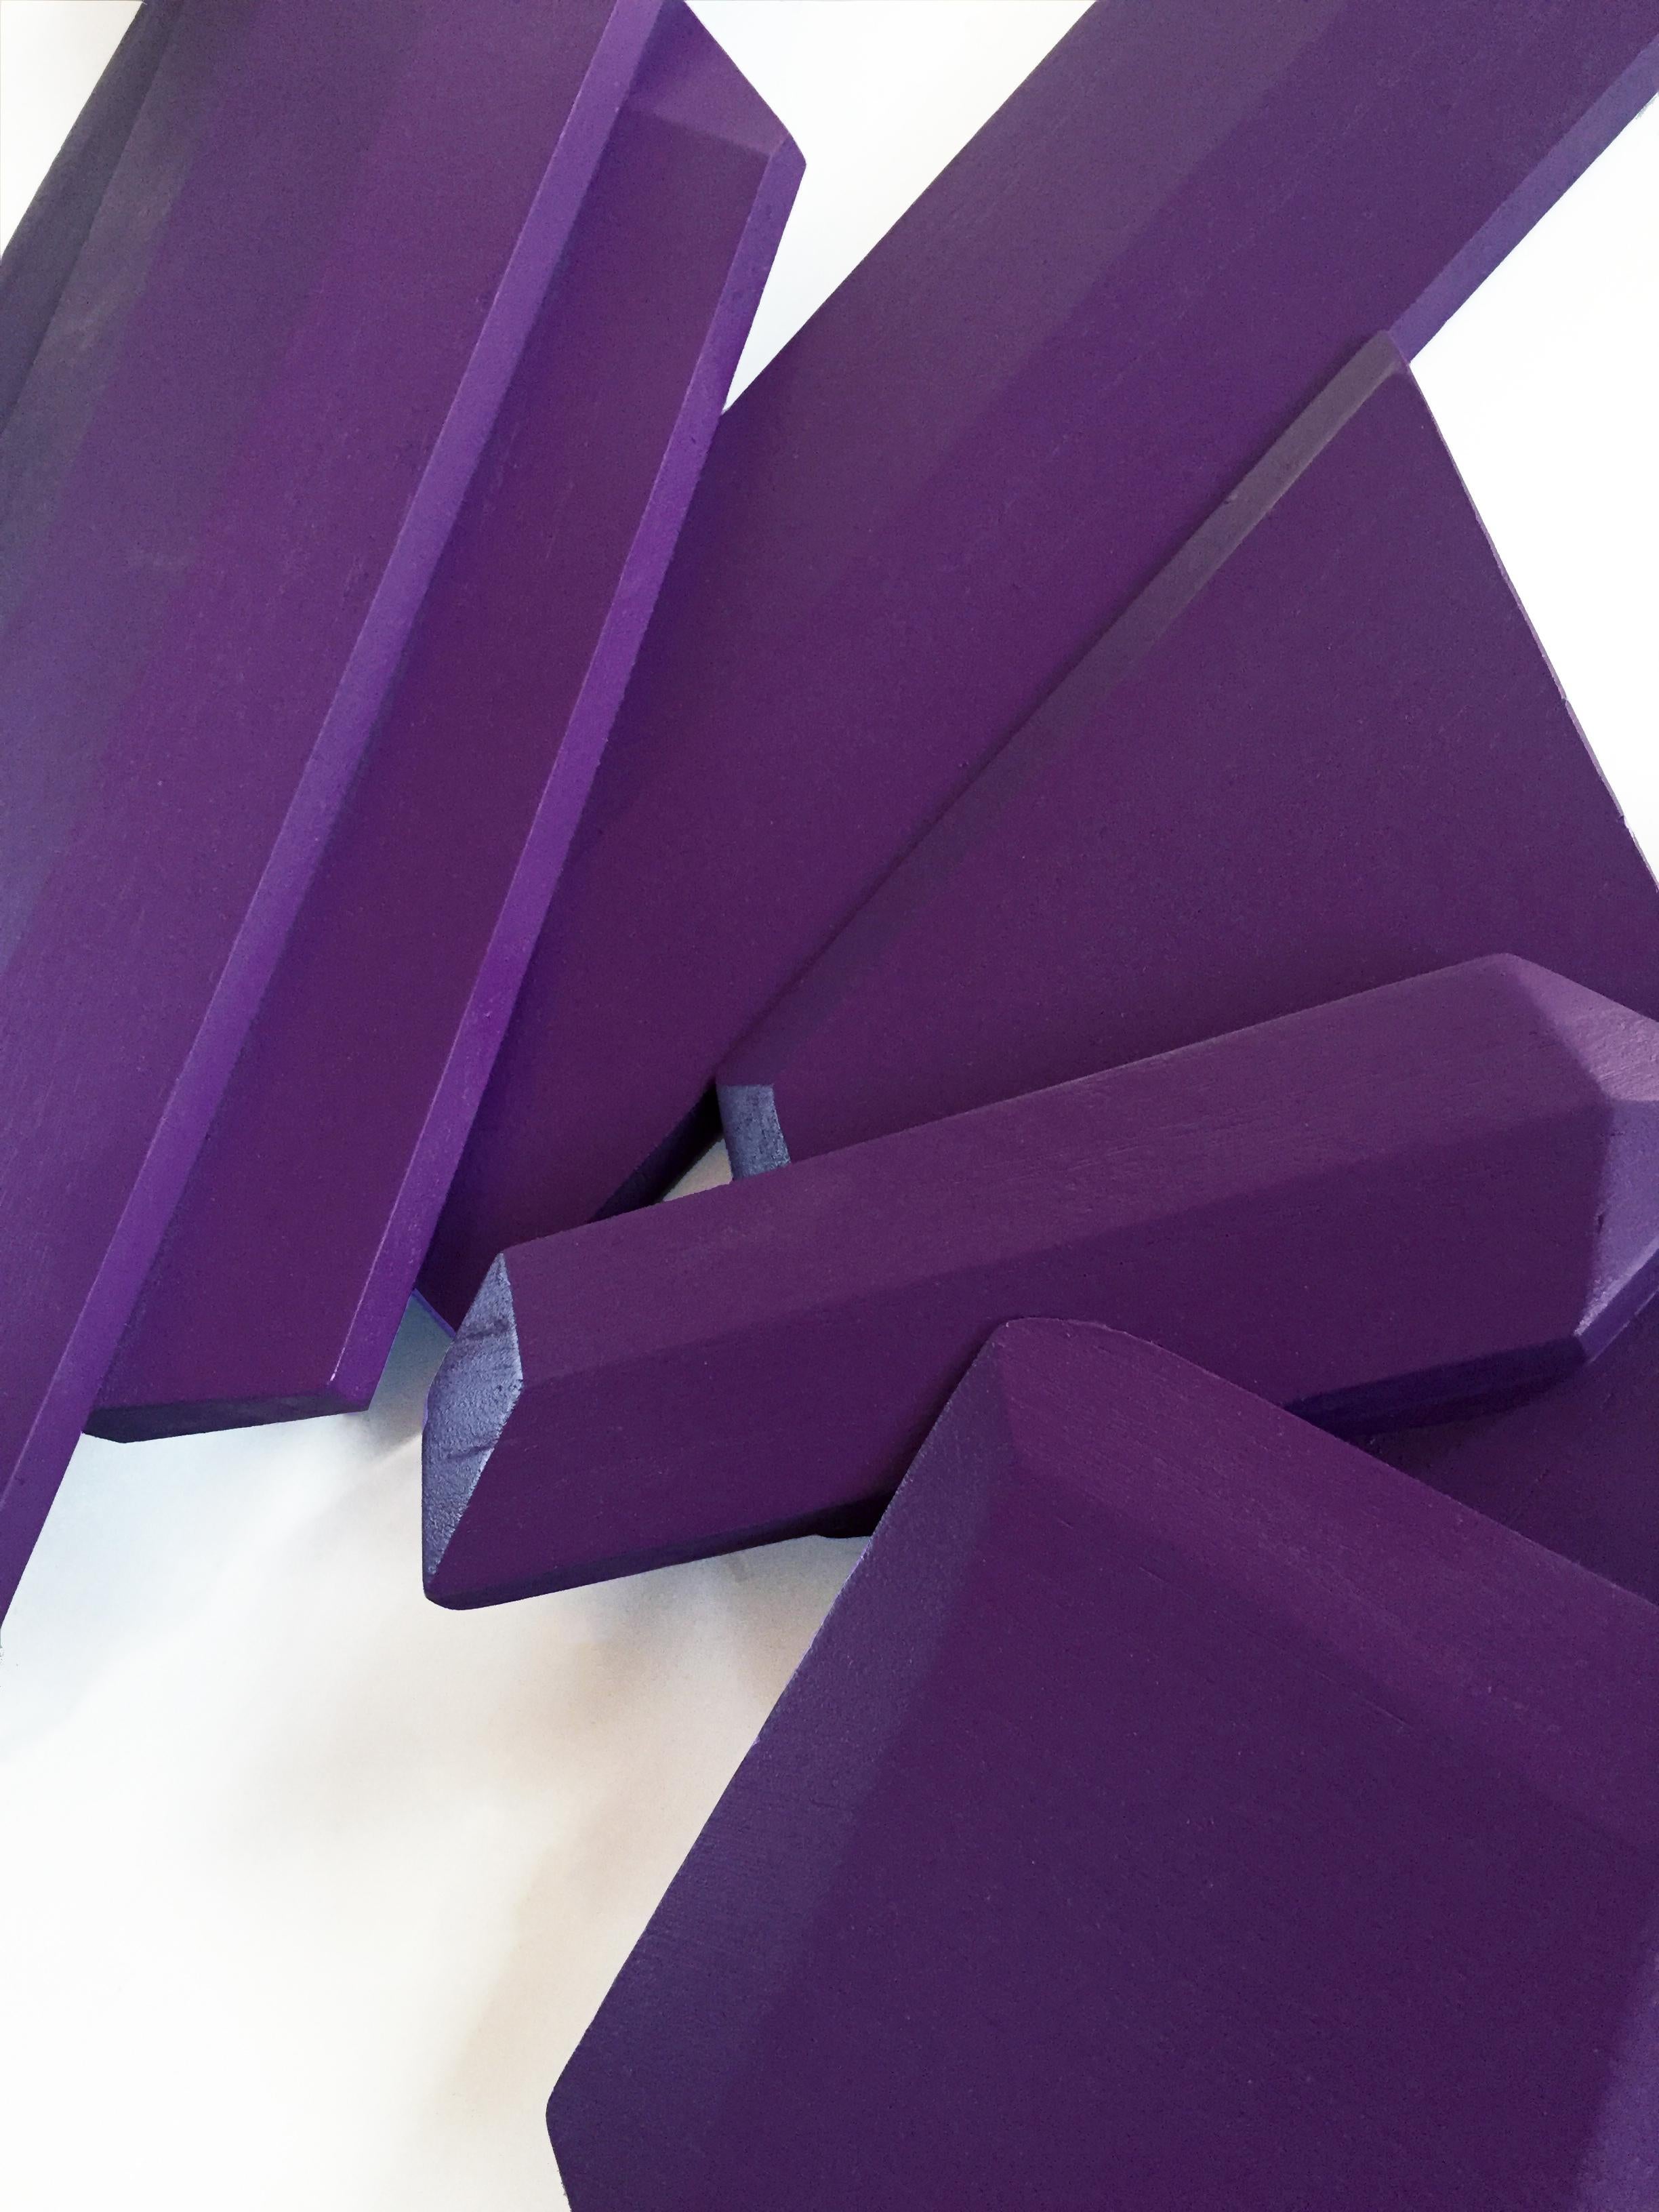 Ultra Violet Crystal (Holz, zeitgenössisches Design, geometrisch, violett, Skulptur) (Braun), Abstract Sculpture, von Chloe Hedden